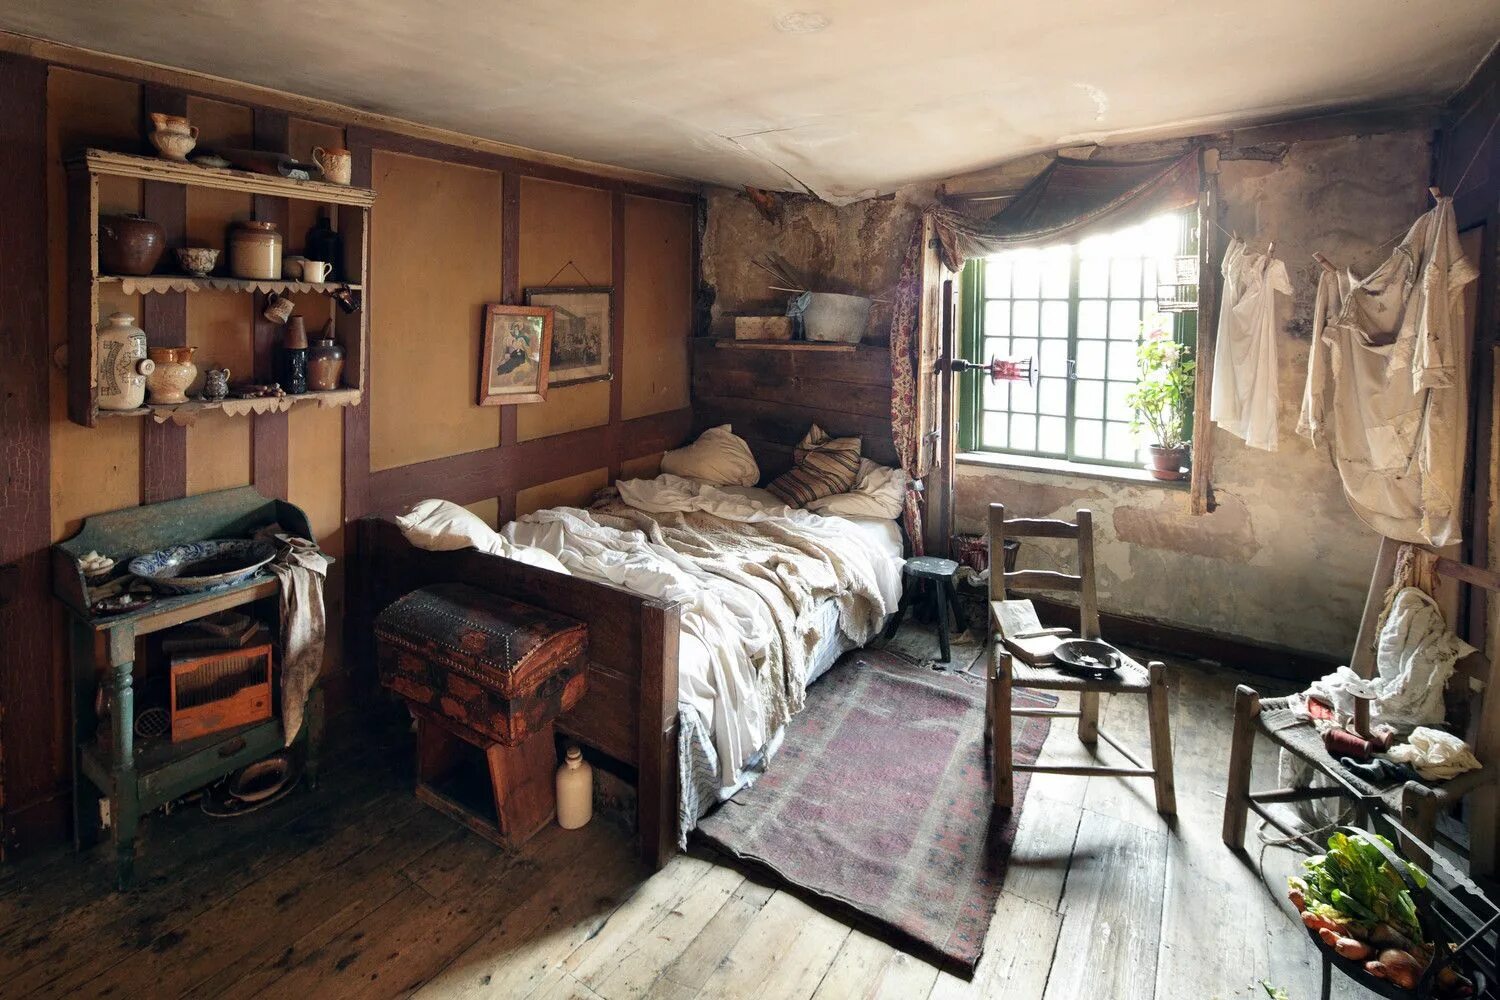 Old bedroom. Спальня в бедном жилище 19 века в Англии. Жилища бедняков Лондон 19в. Бедный дом внутри. Бедная комната.